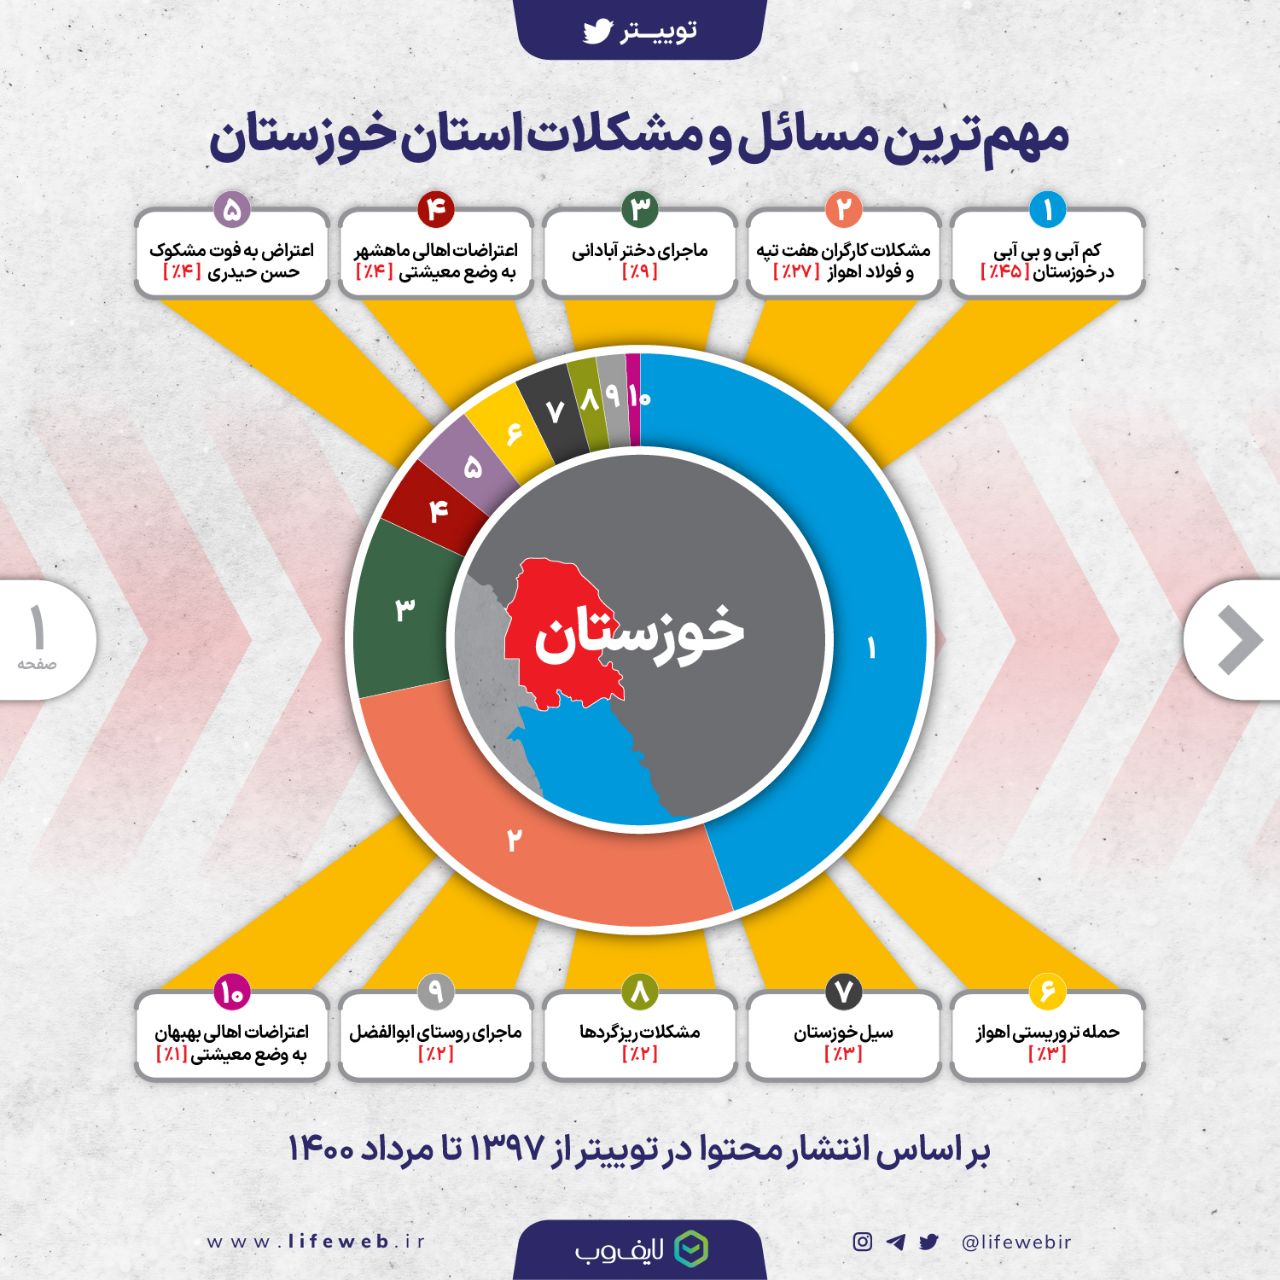 پایش فضای مجازی حول مسائل مربوط به خوزستان